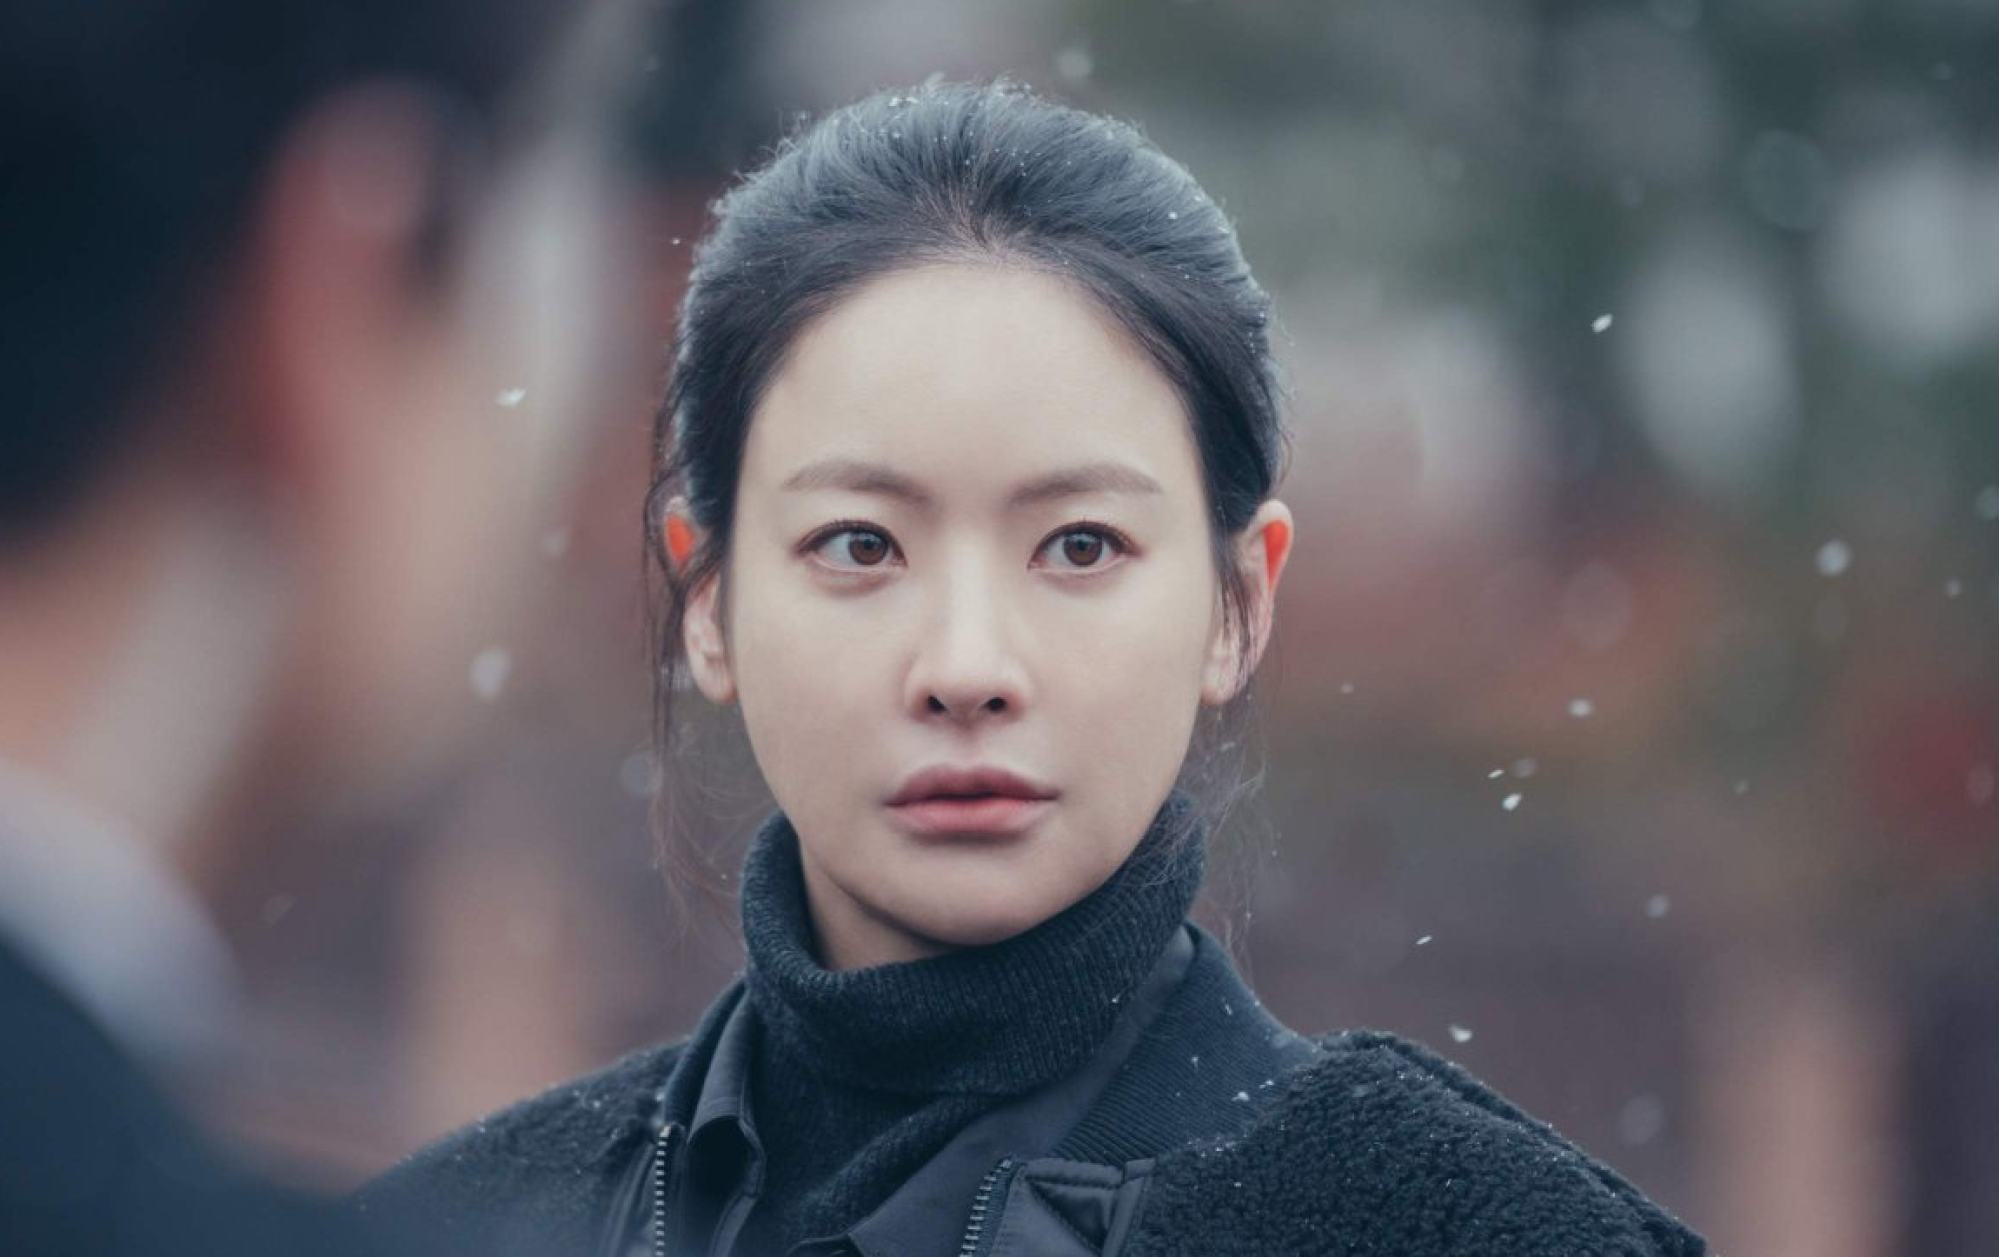 IU, Park Bo Gum to star in upcoming K-drama set in Jeju Island